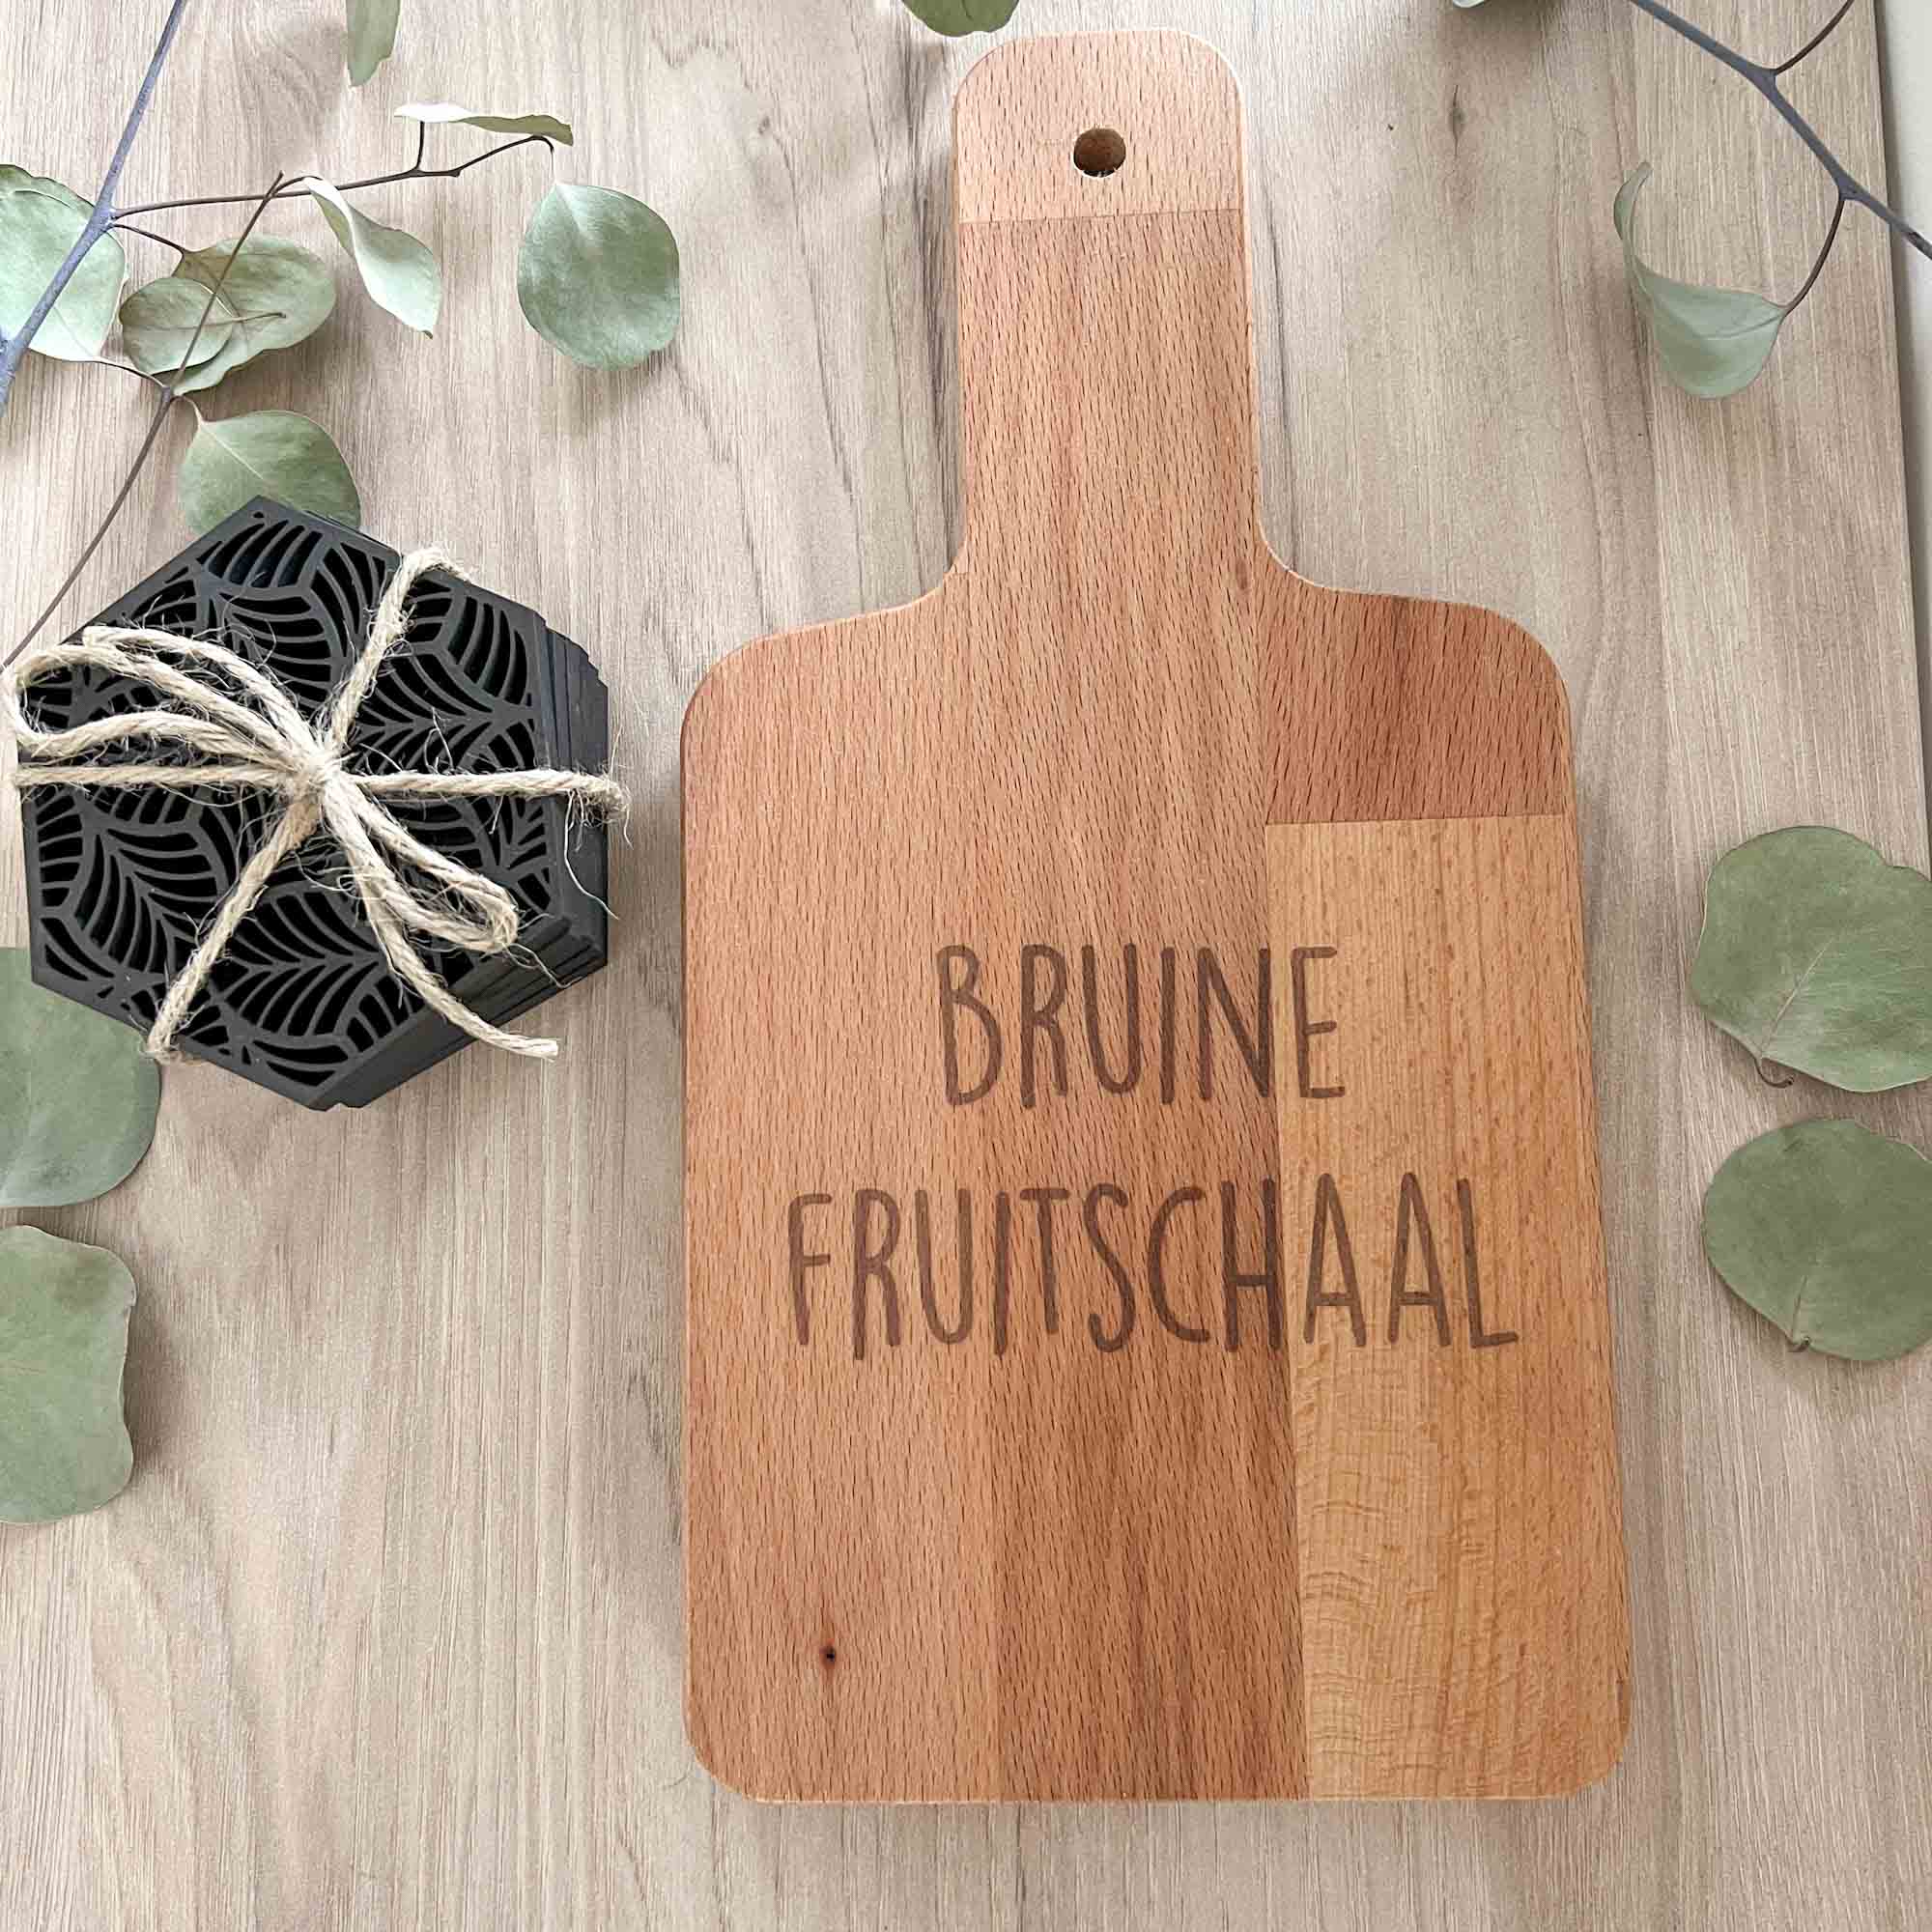 Cadeaupakket - Bruine fruitschaal + Onderzetters